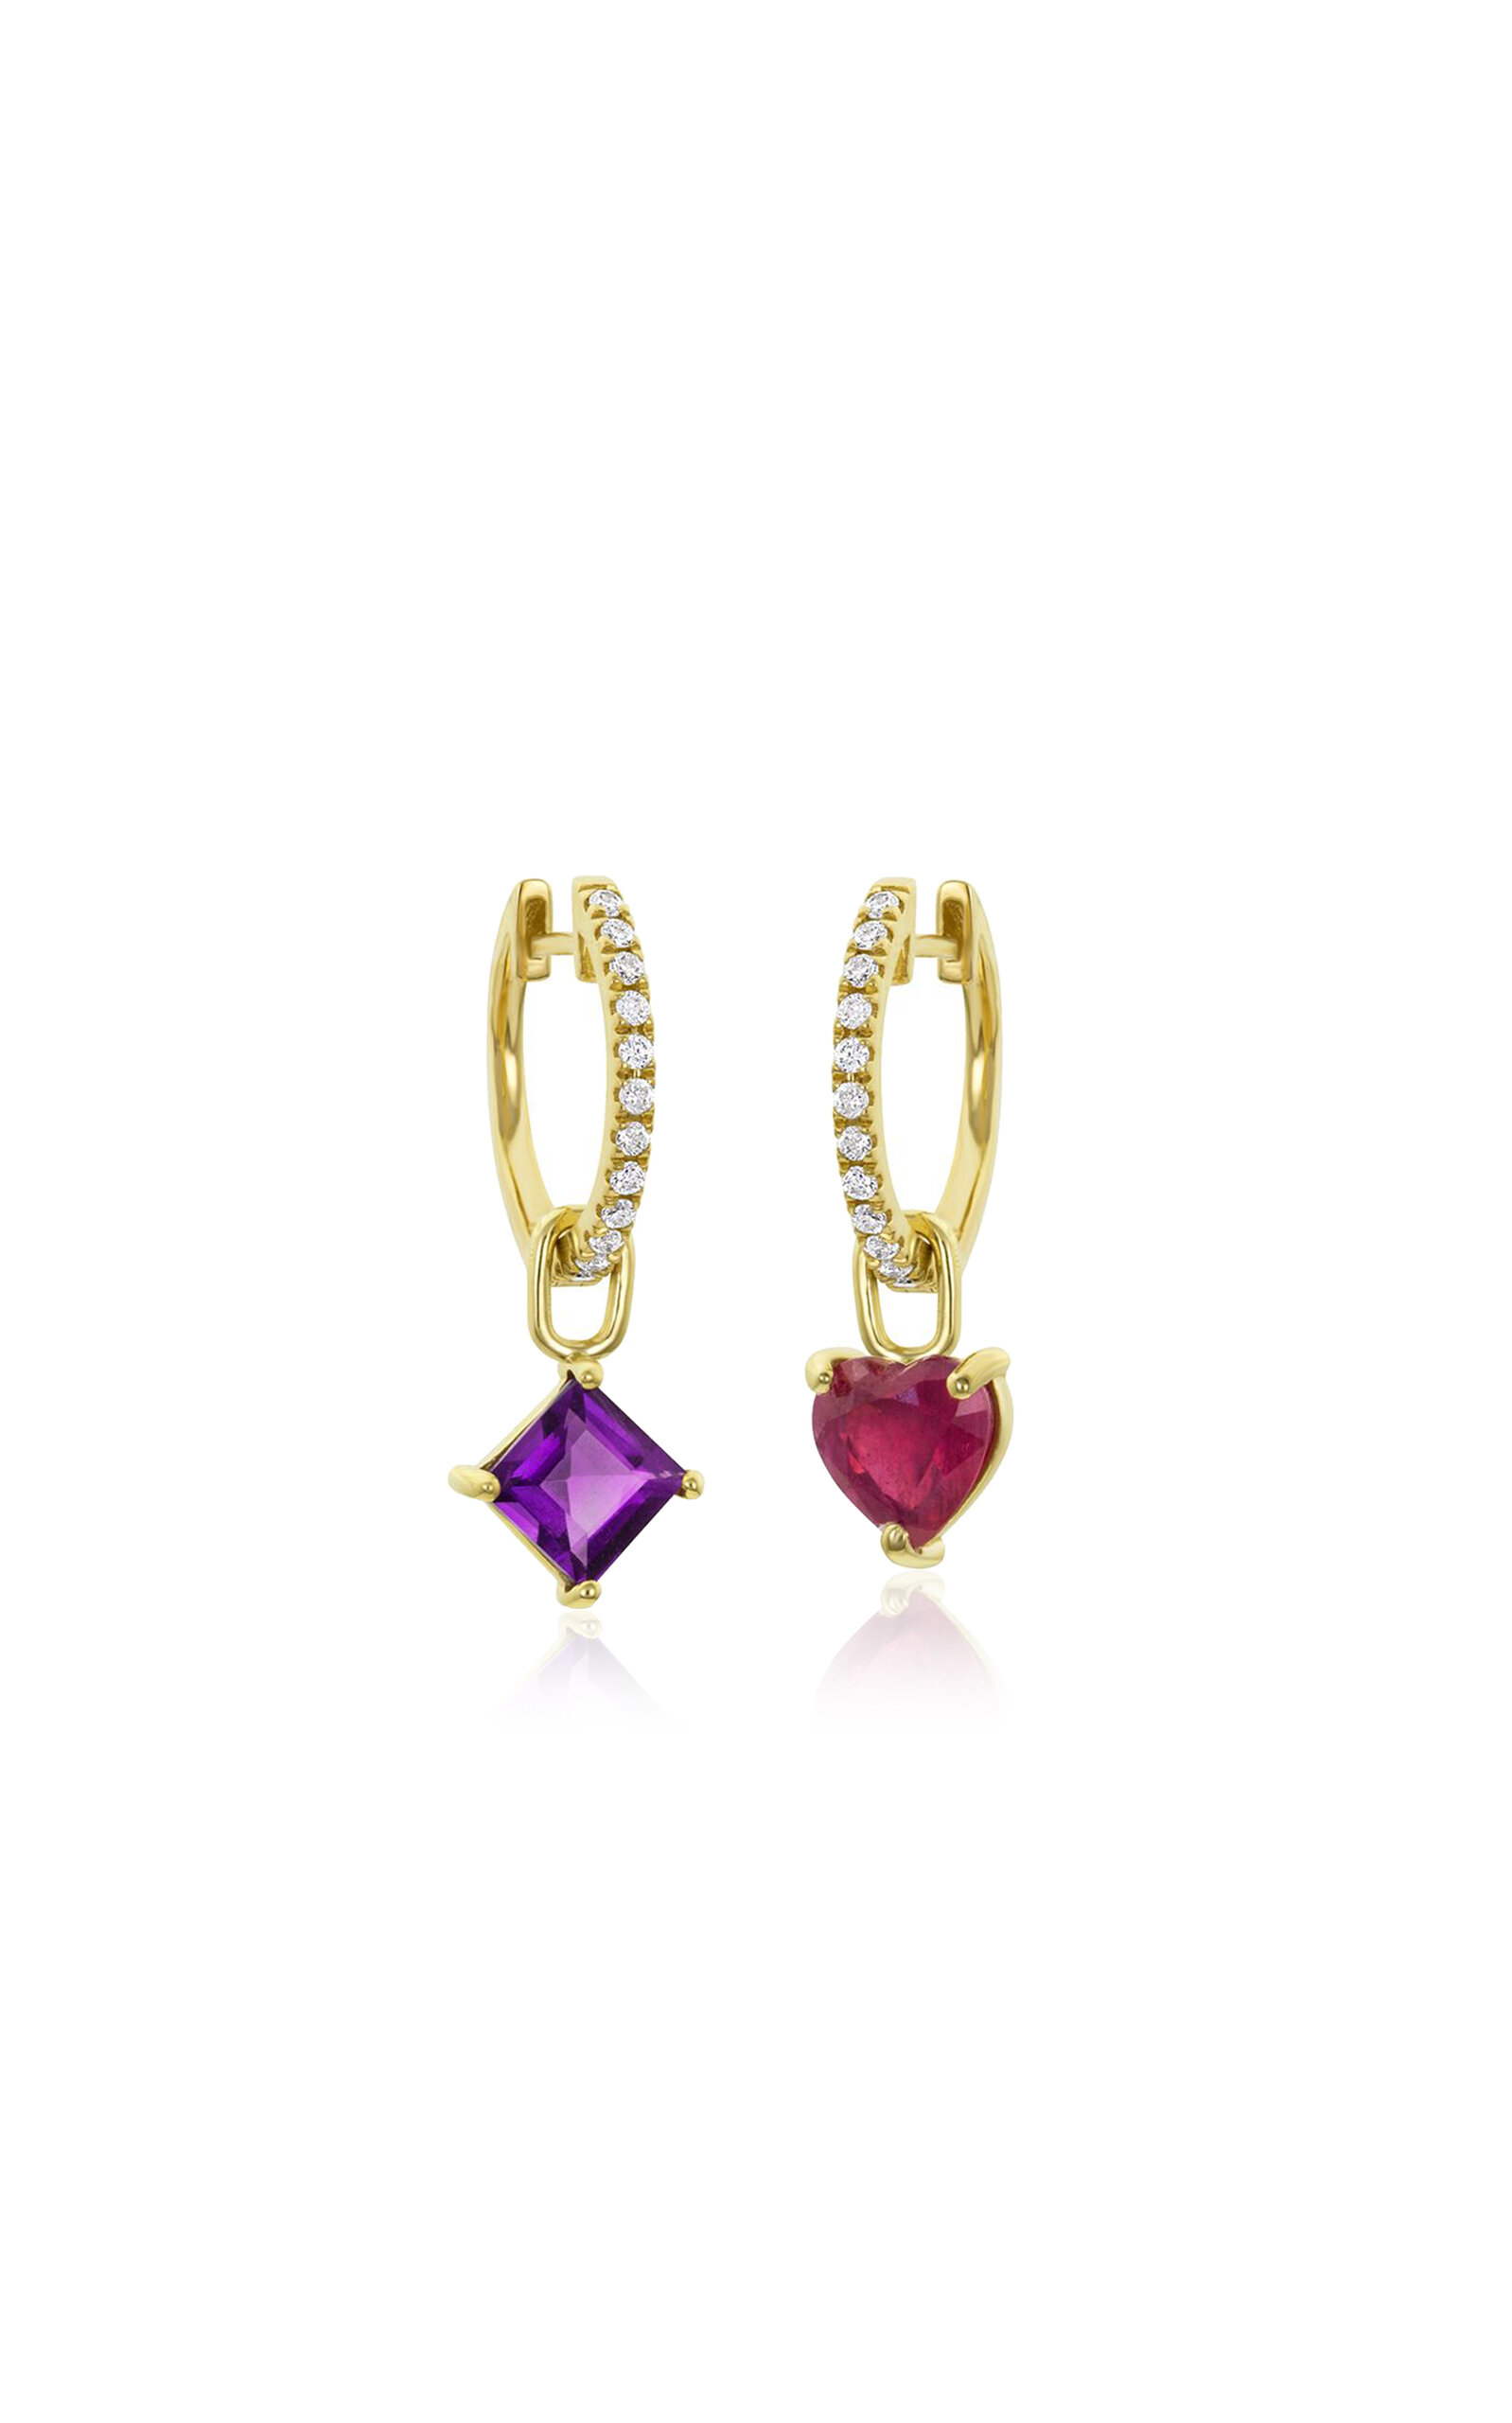 M.spalten Women's The Mini Gemfetti 14k Yellow Gold Ruby; Amethyst And Diamond Earrings